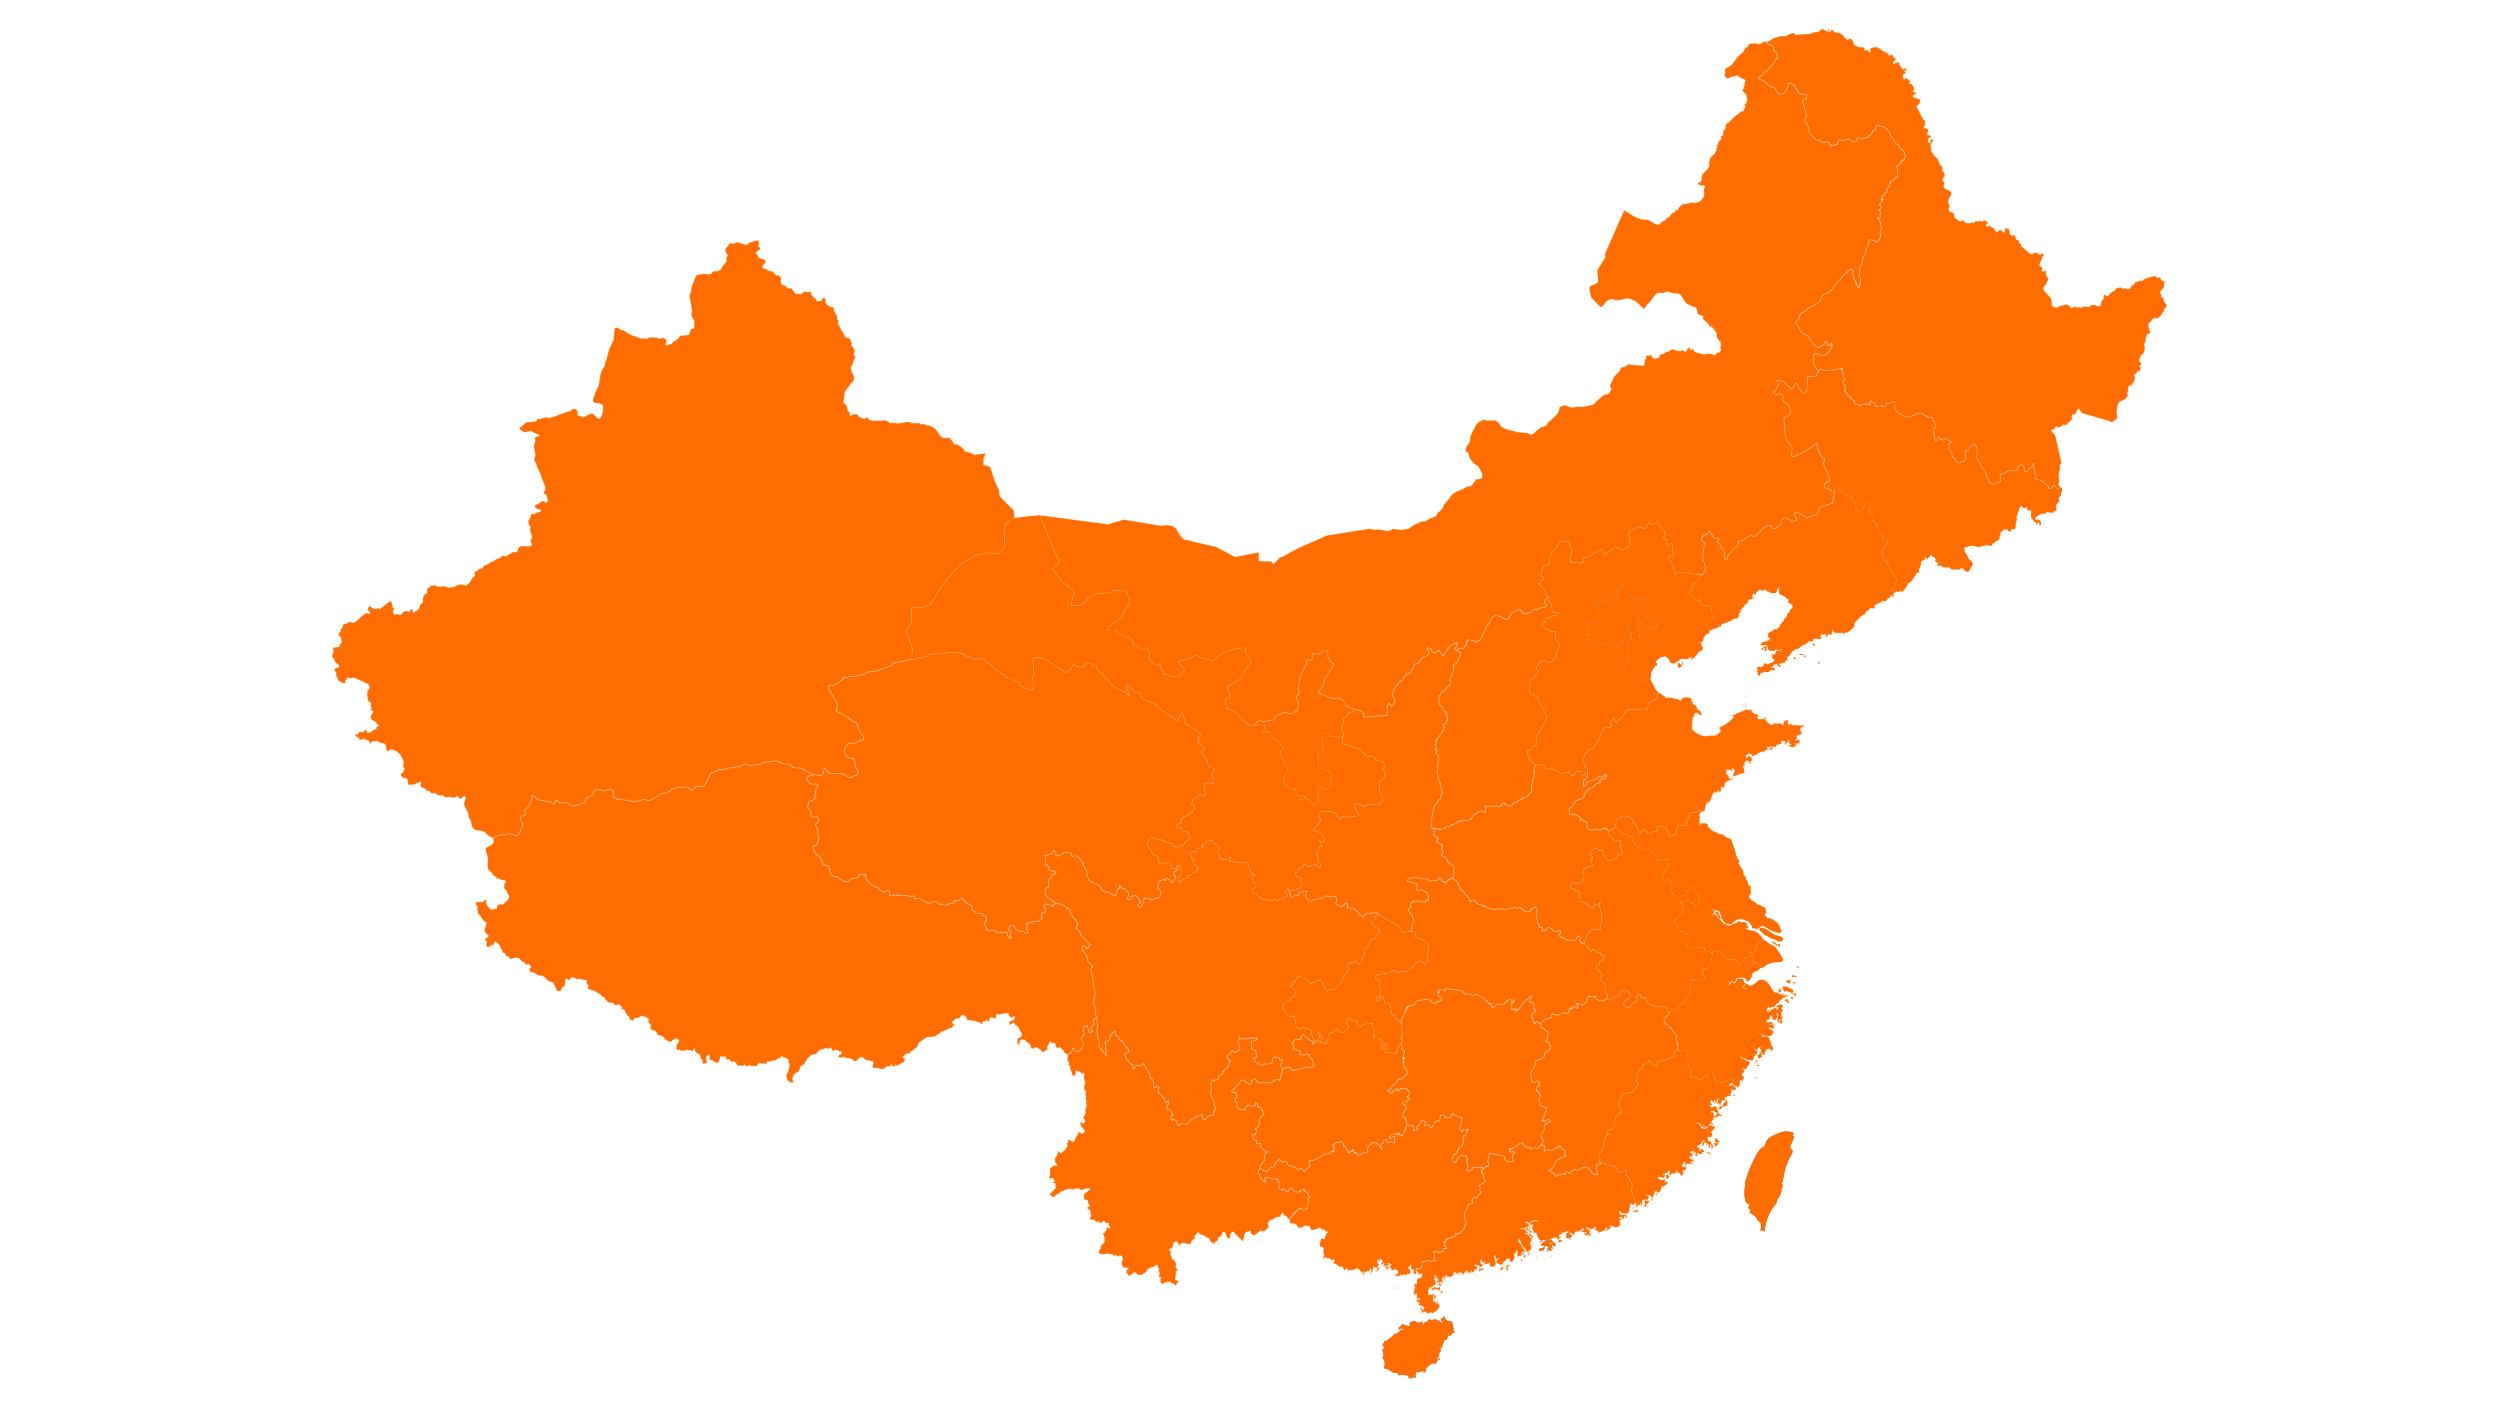 中国区域地图